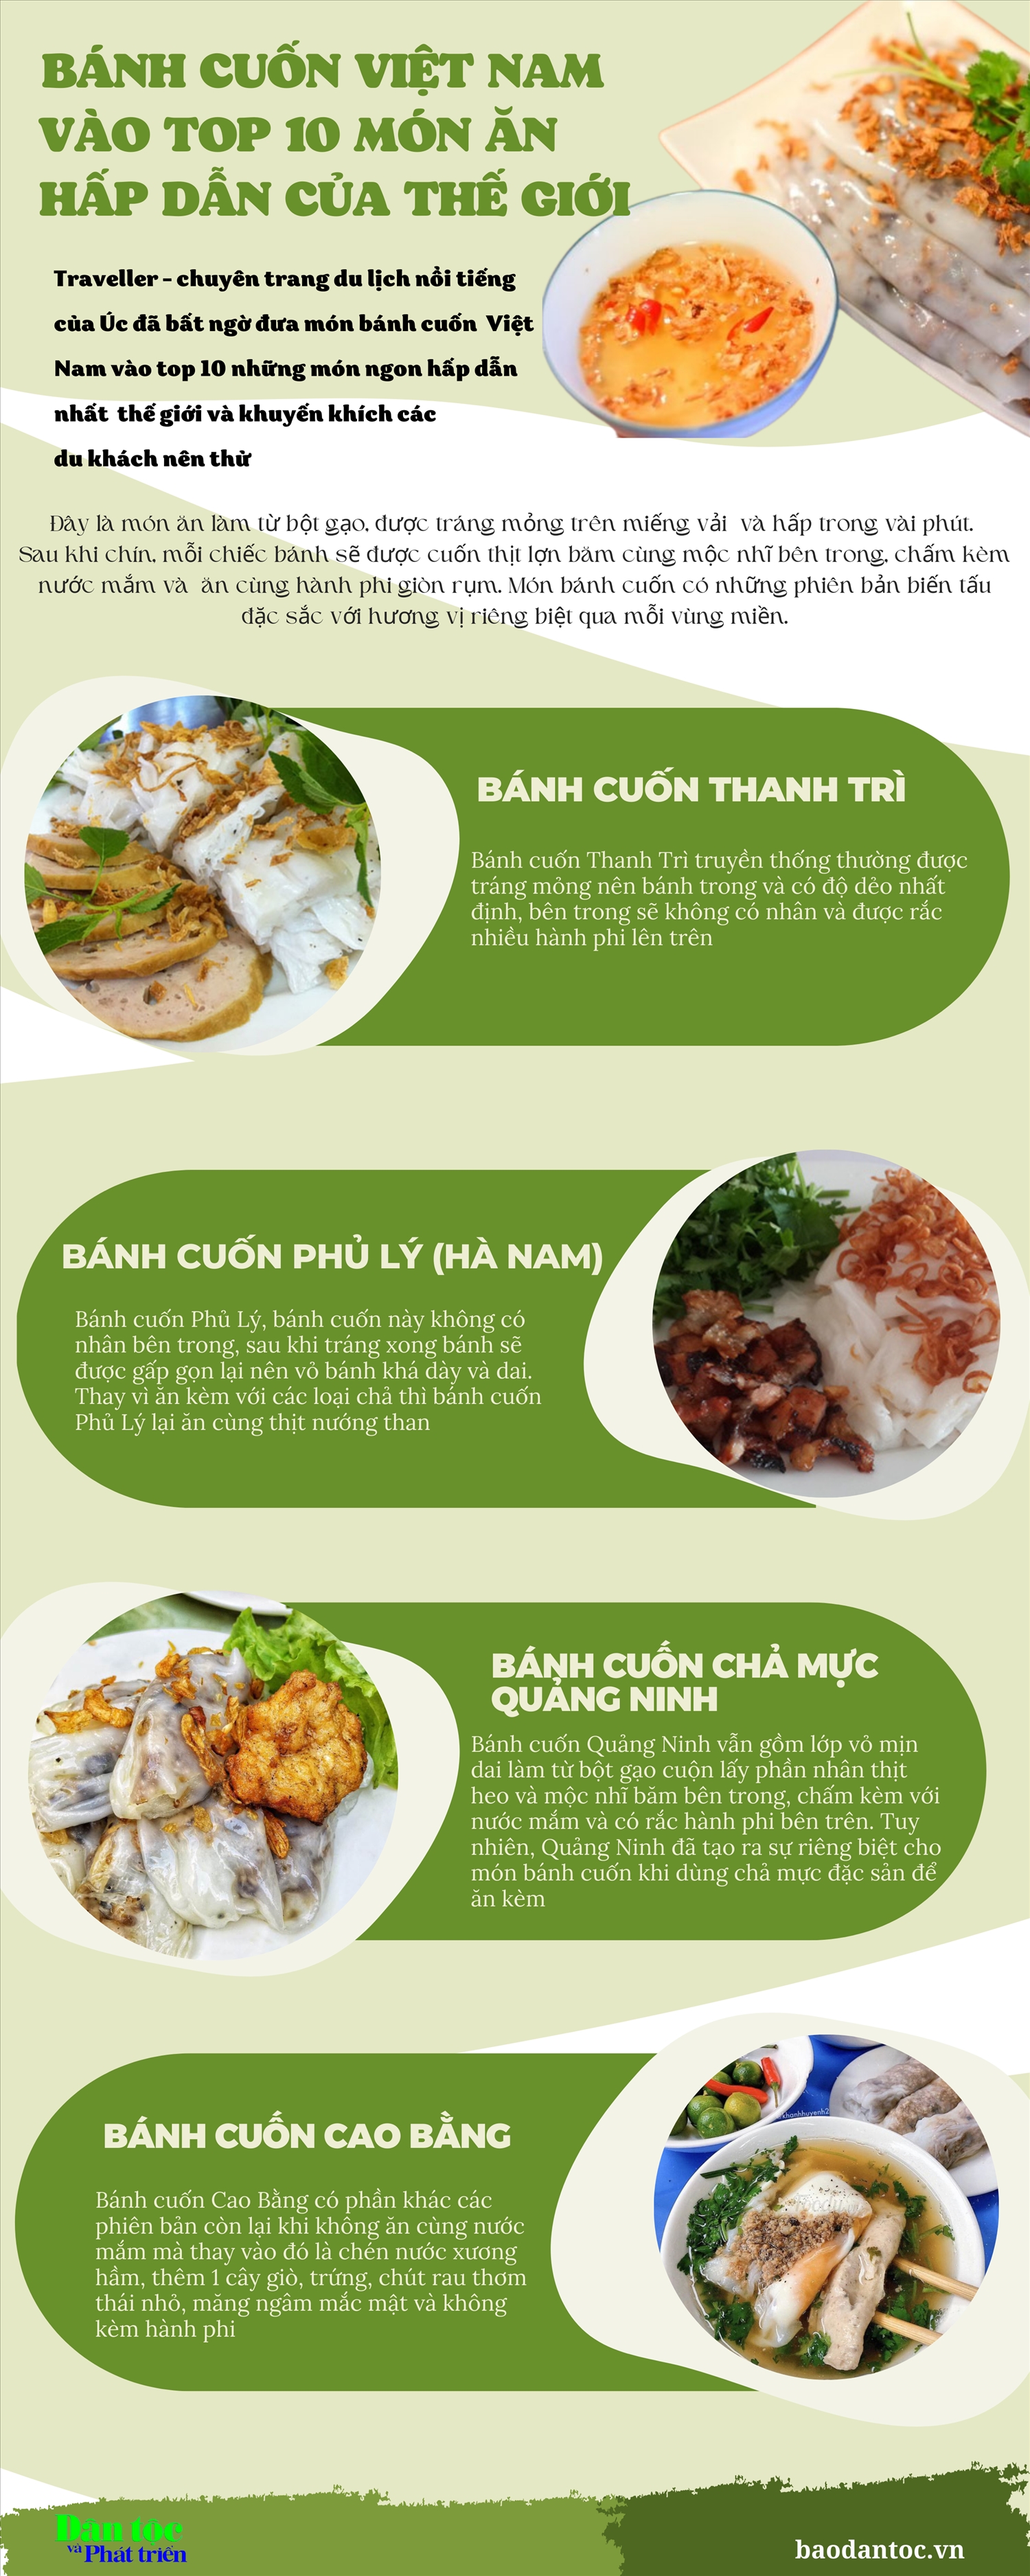 Bánh cuốn Việt Nam vào top 10 món ngon hấp dẫn nhất thế giới